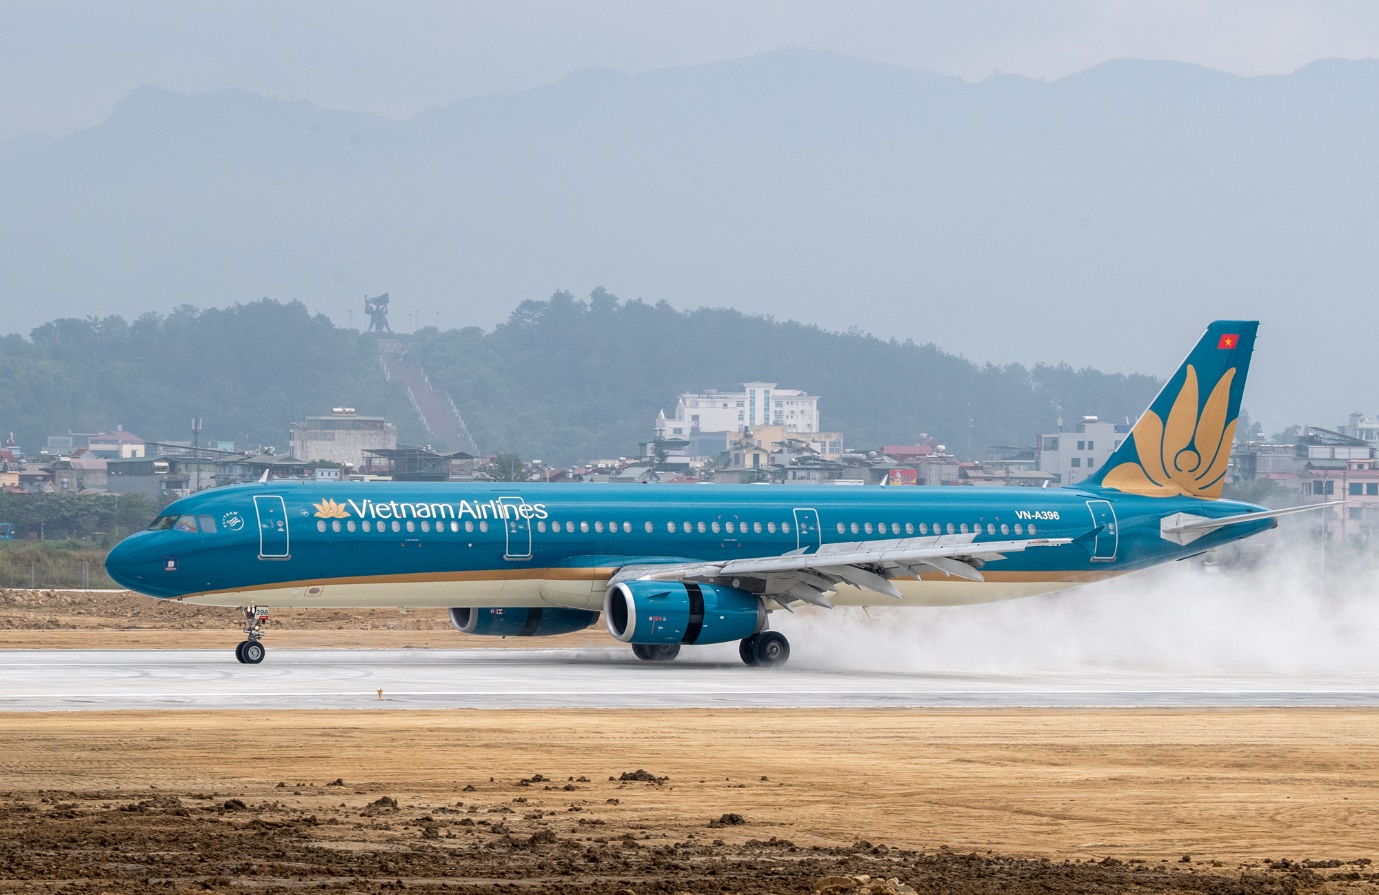 Lần đầu tiên trong lịch sử, sân bay Điện Biên chính thức đón máy bay cỡ lớn Airbus A321 - Ảnh 1.